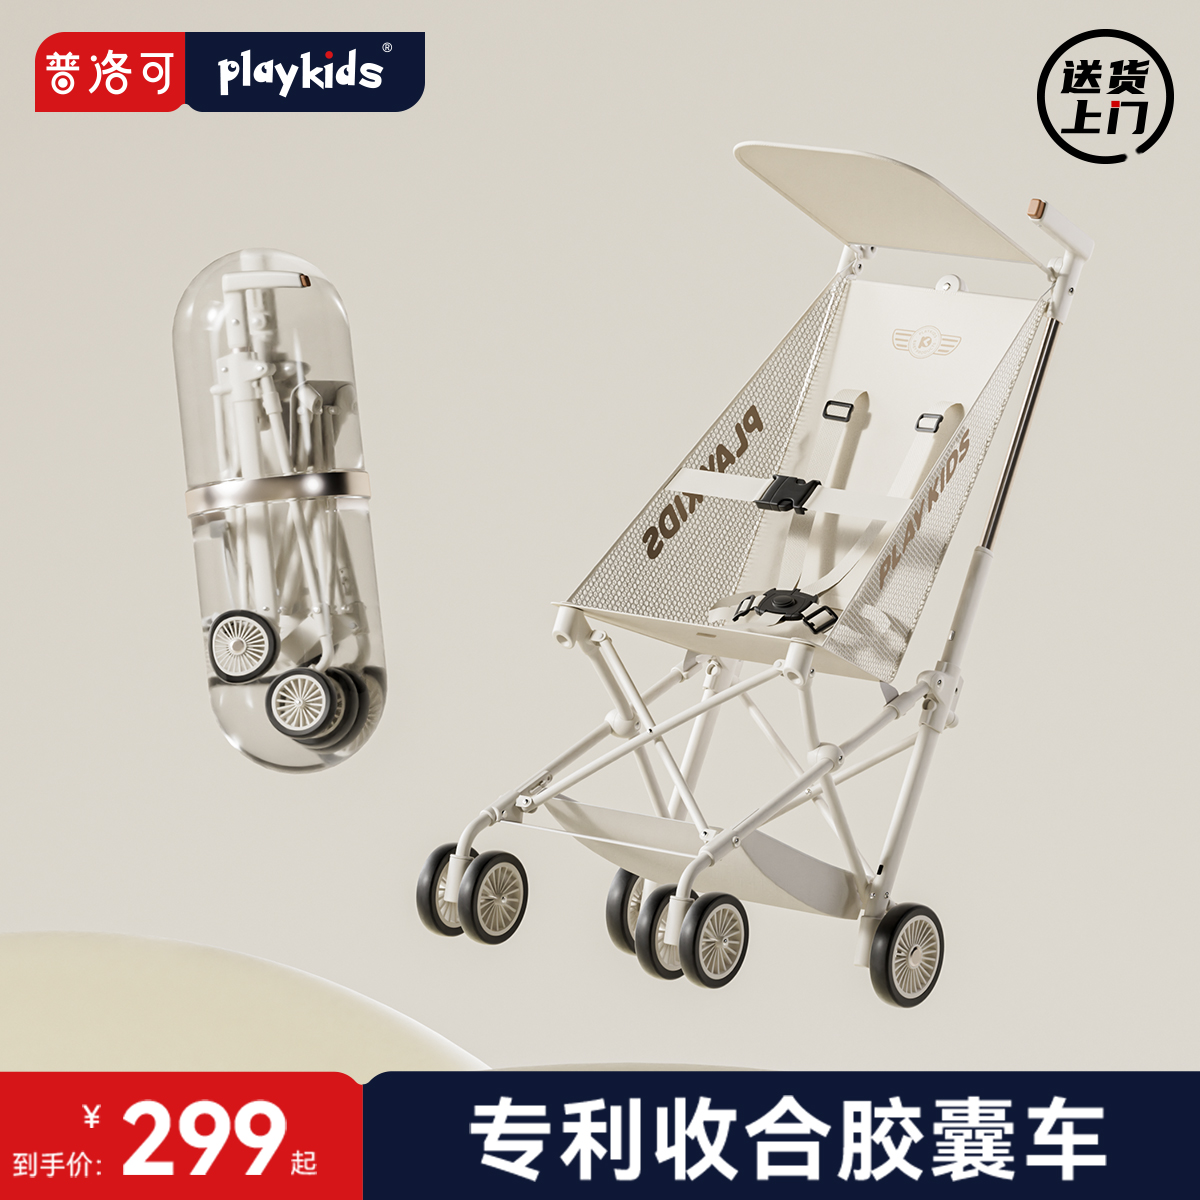 playkids普洛可A1口袋车超小可折叠便捷可登机儿童宝宝旅行胶囊车